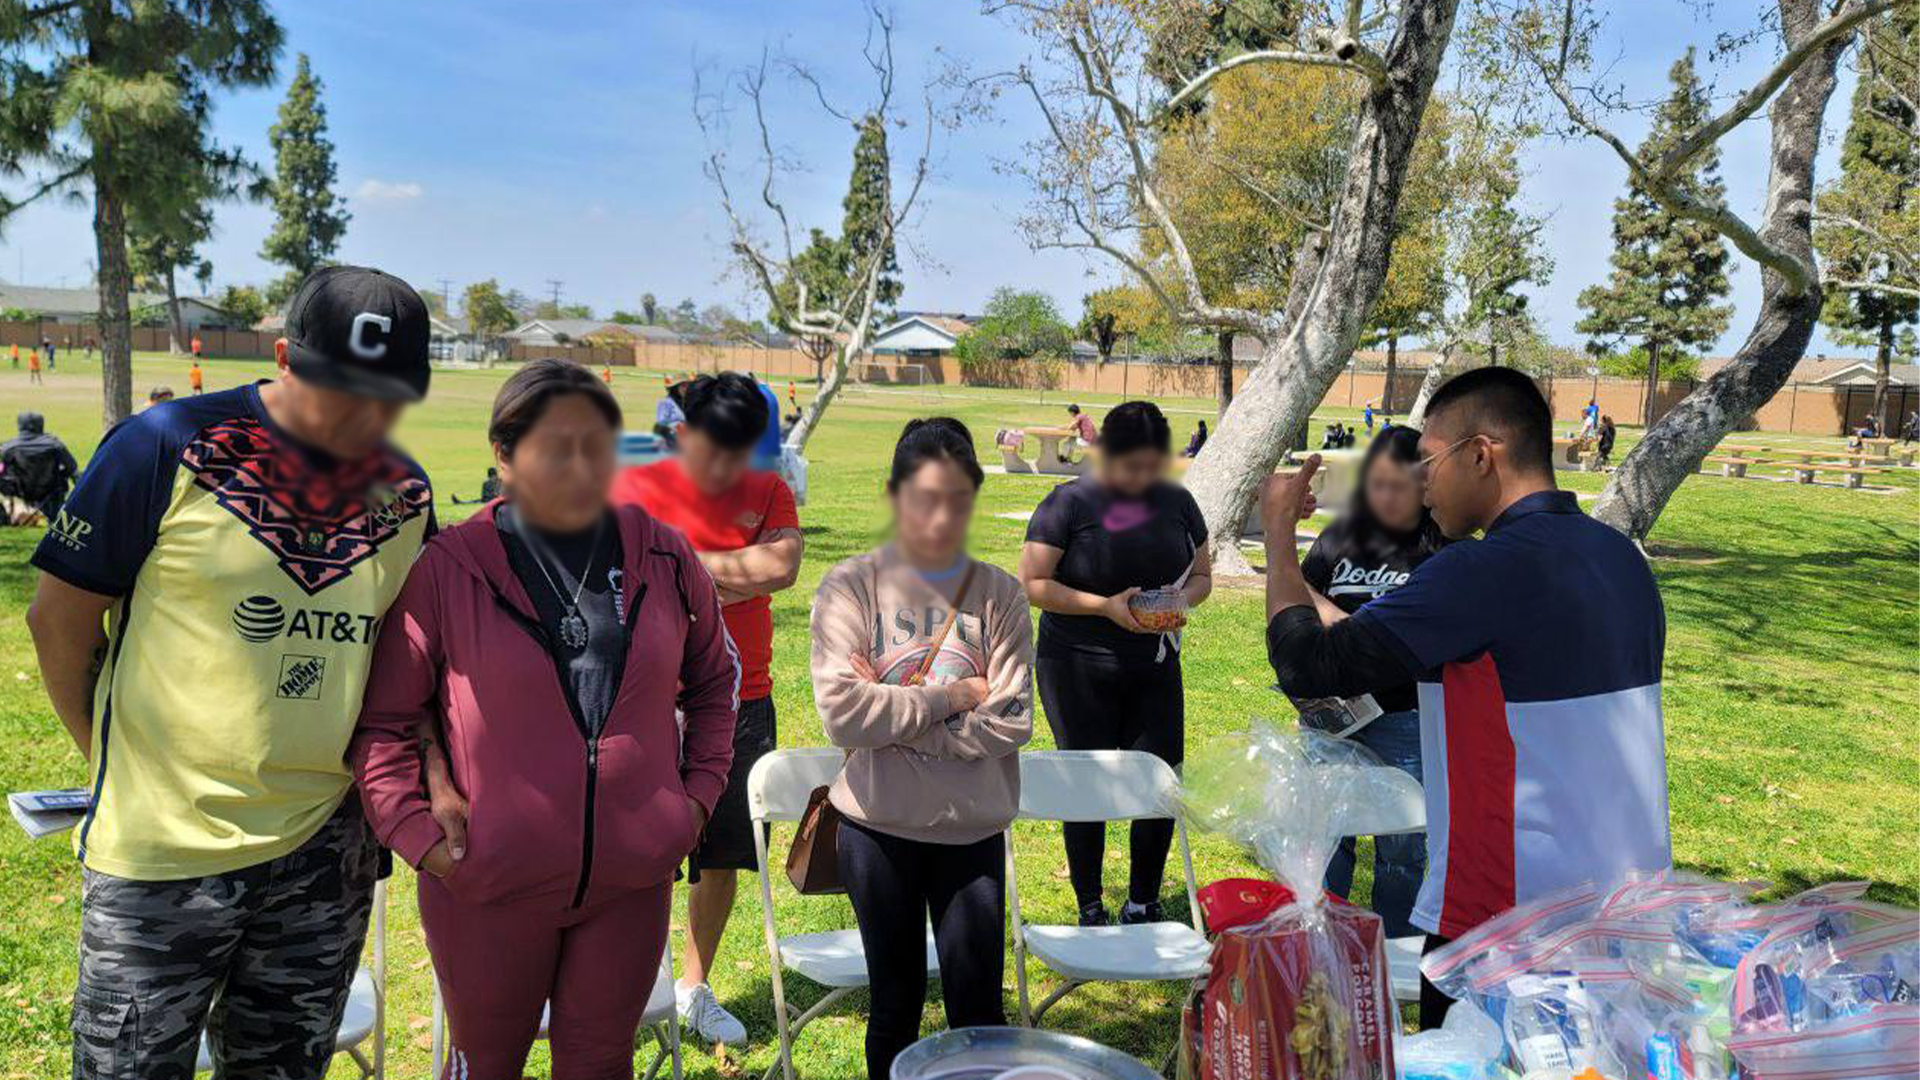 El grupo de evangelización en Bellflower, California realizó una concentración de fe en la comunidad